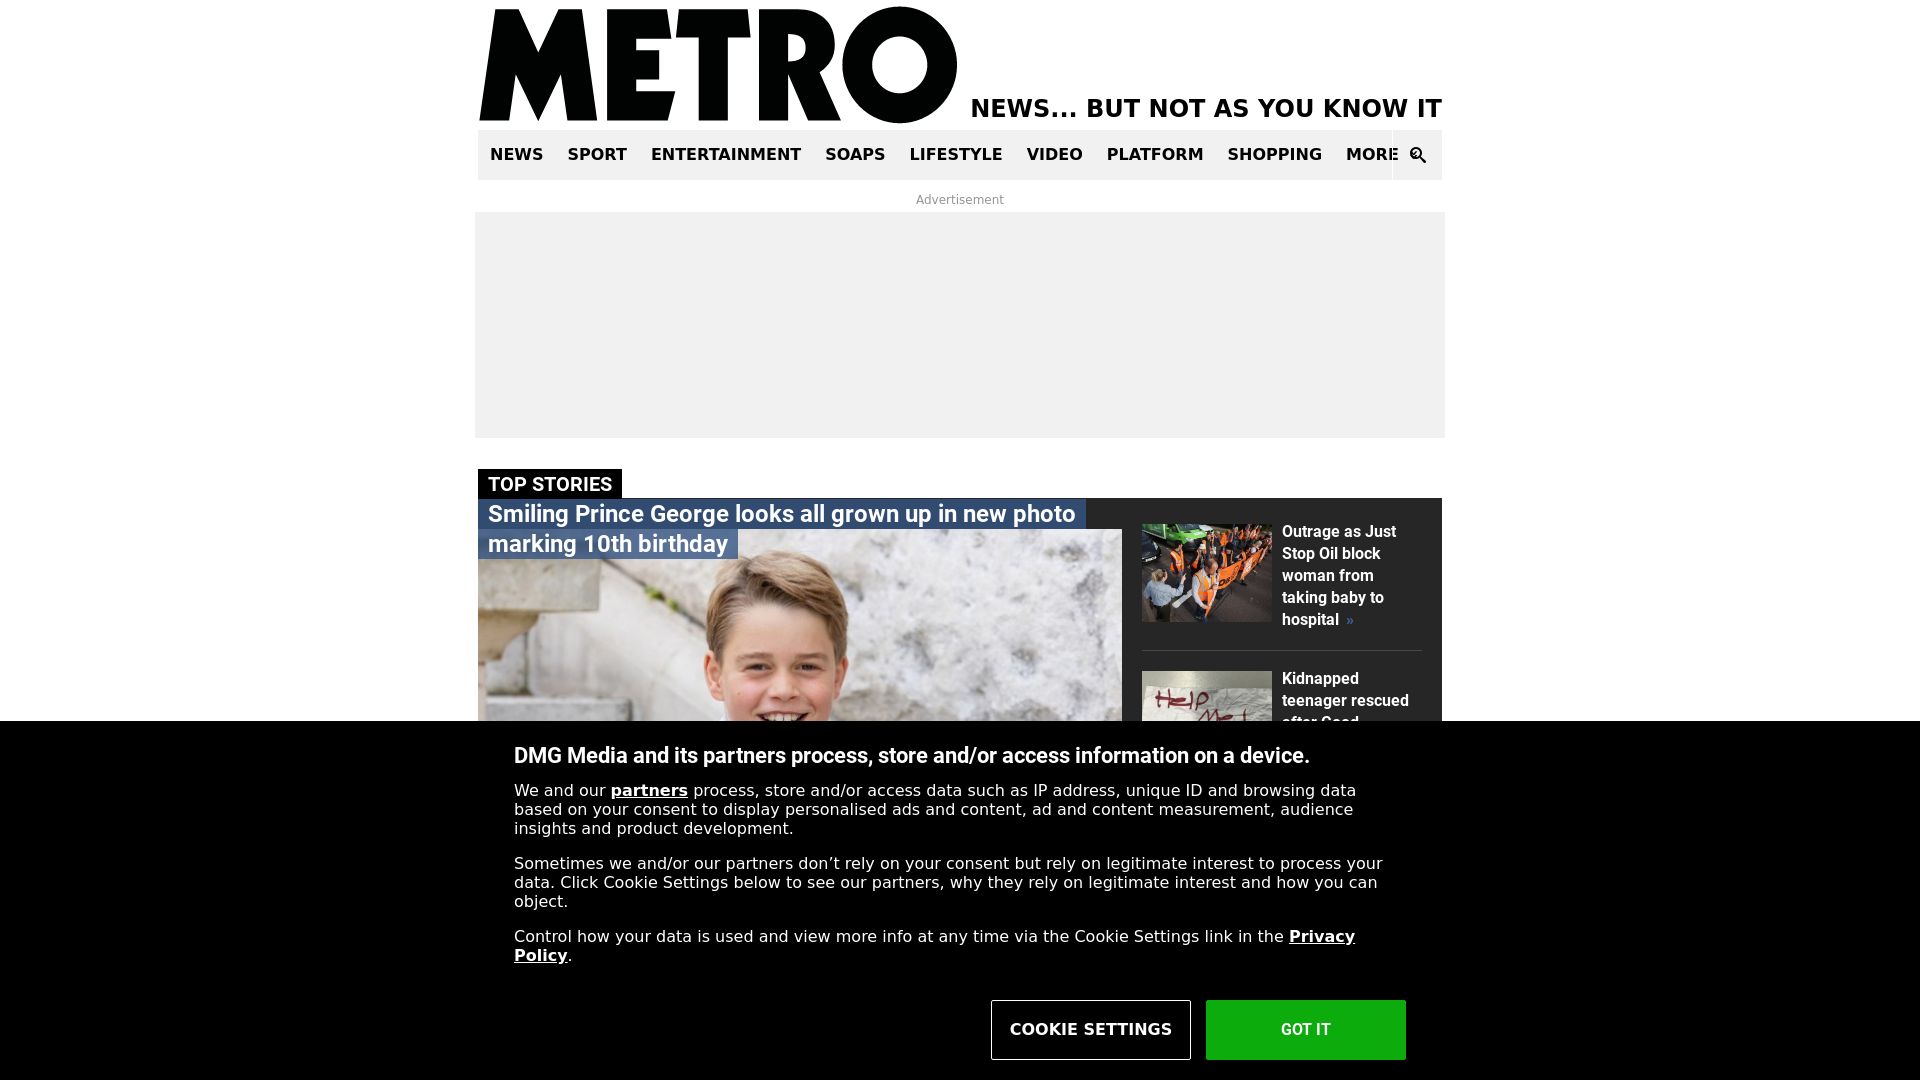 Website status metro.co.uk is   ONLINE